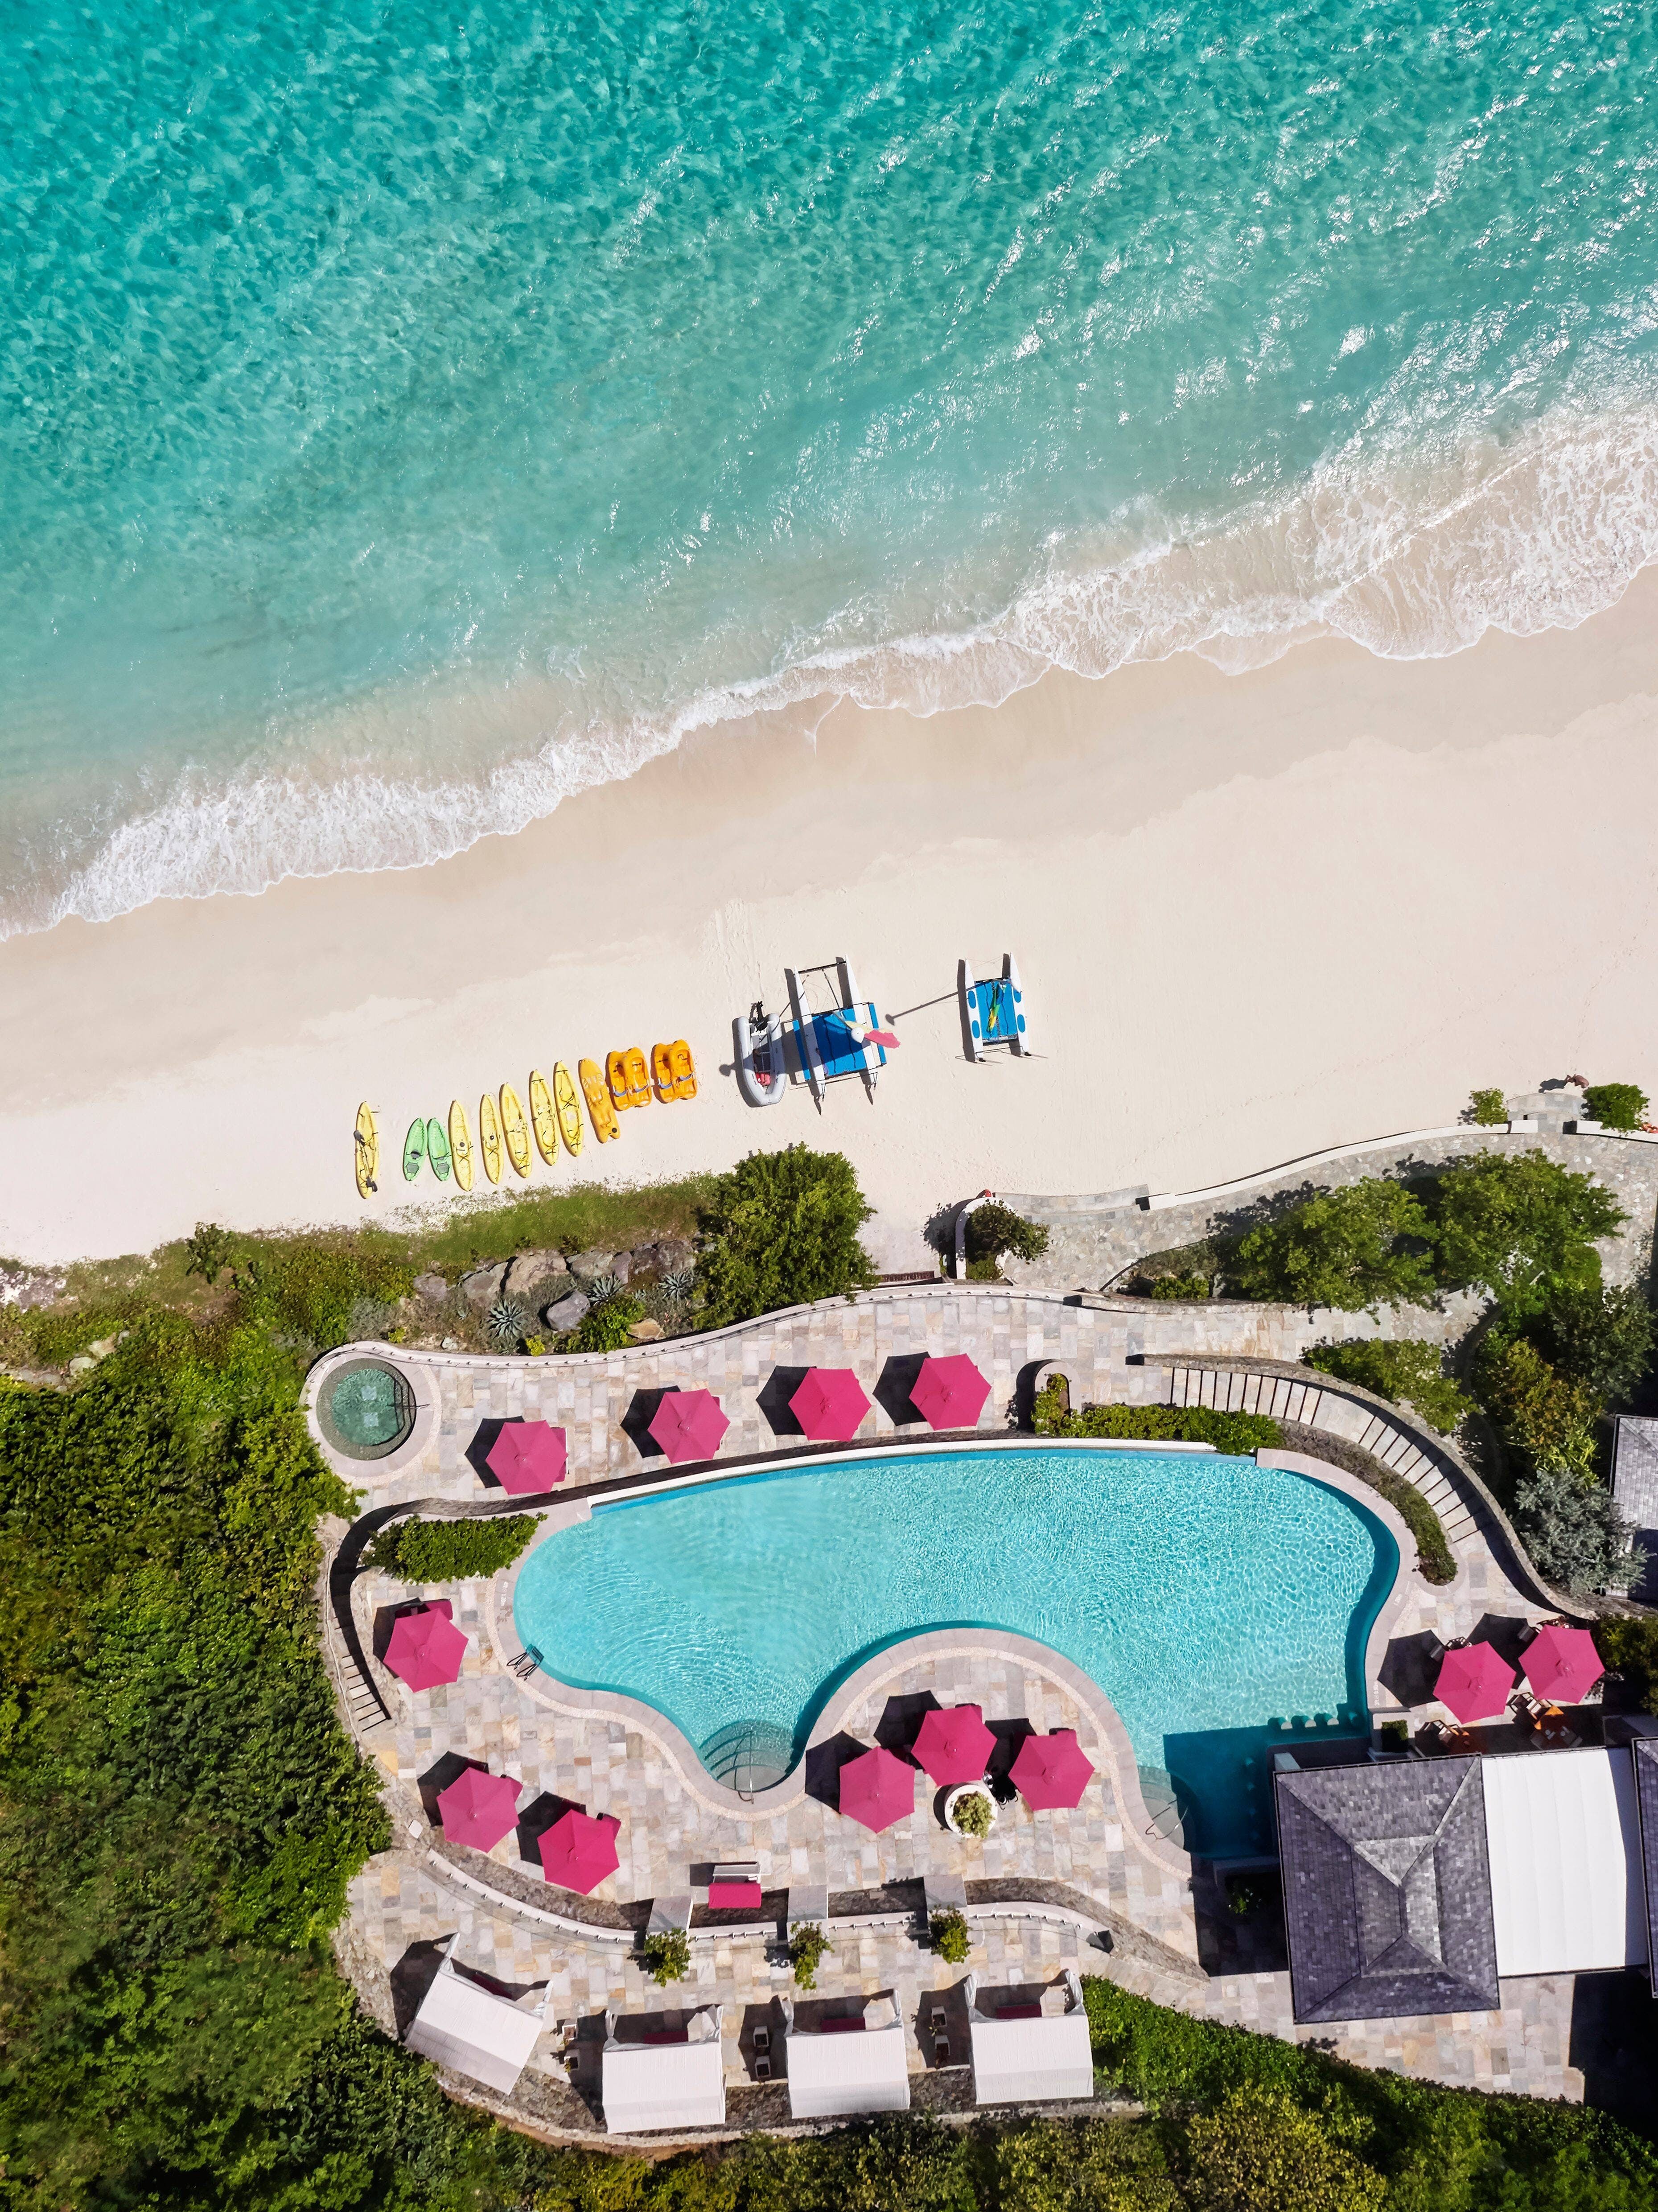 Fuja das multidões nestes resorts secretos do Caribe 